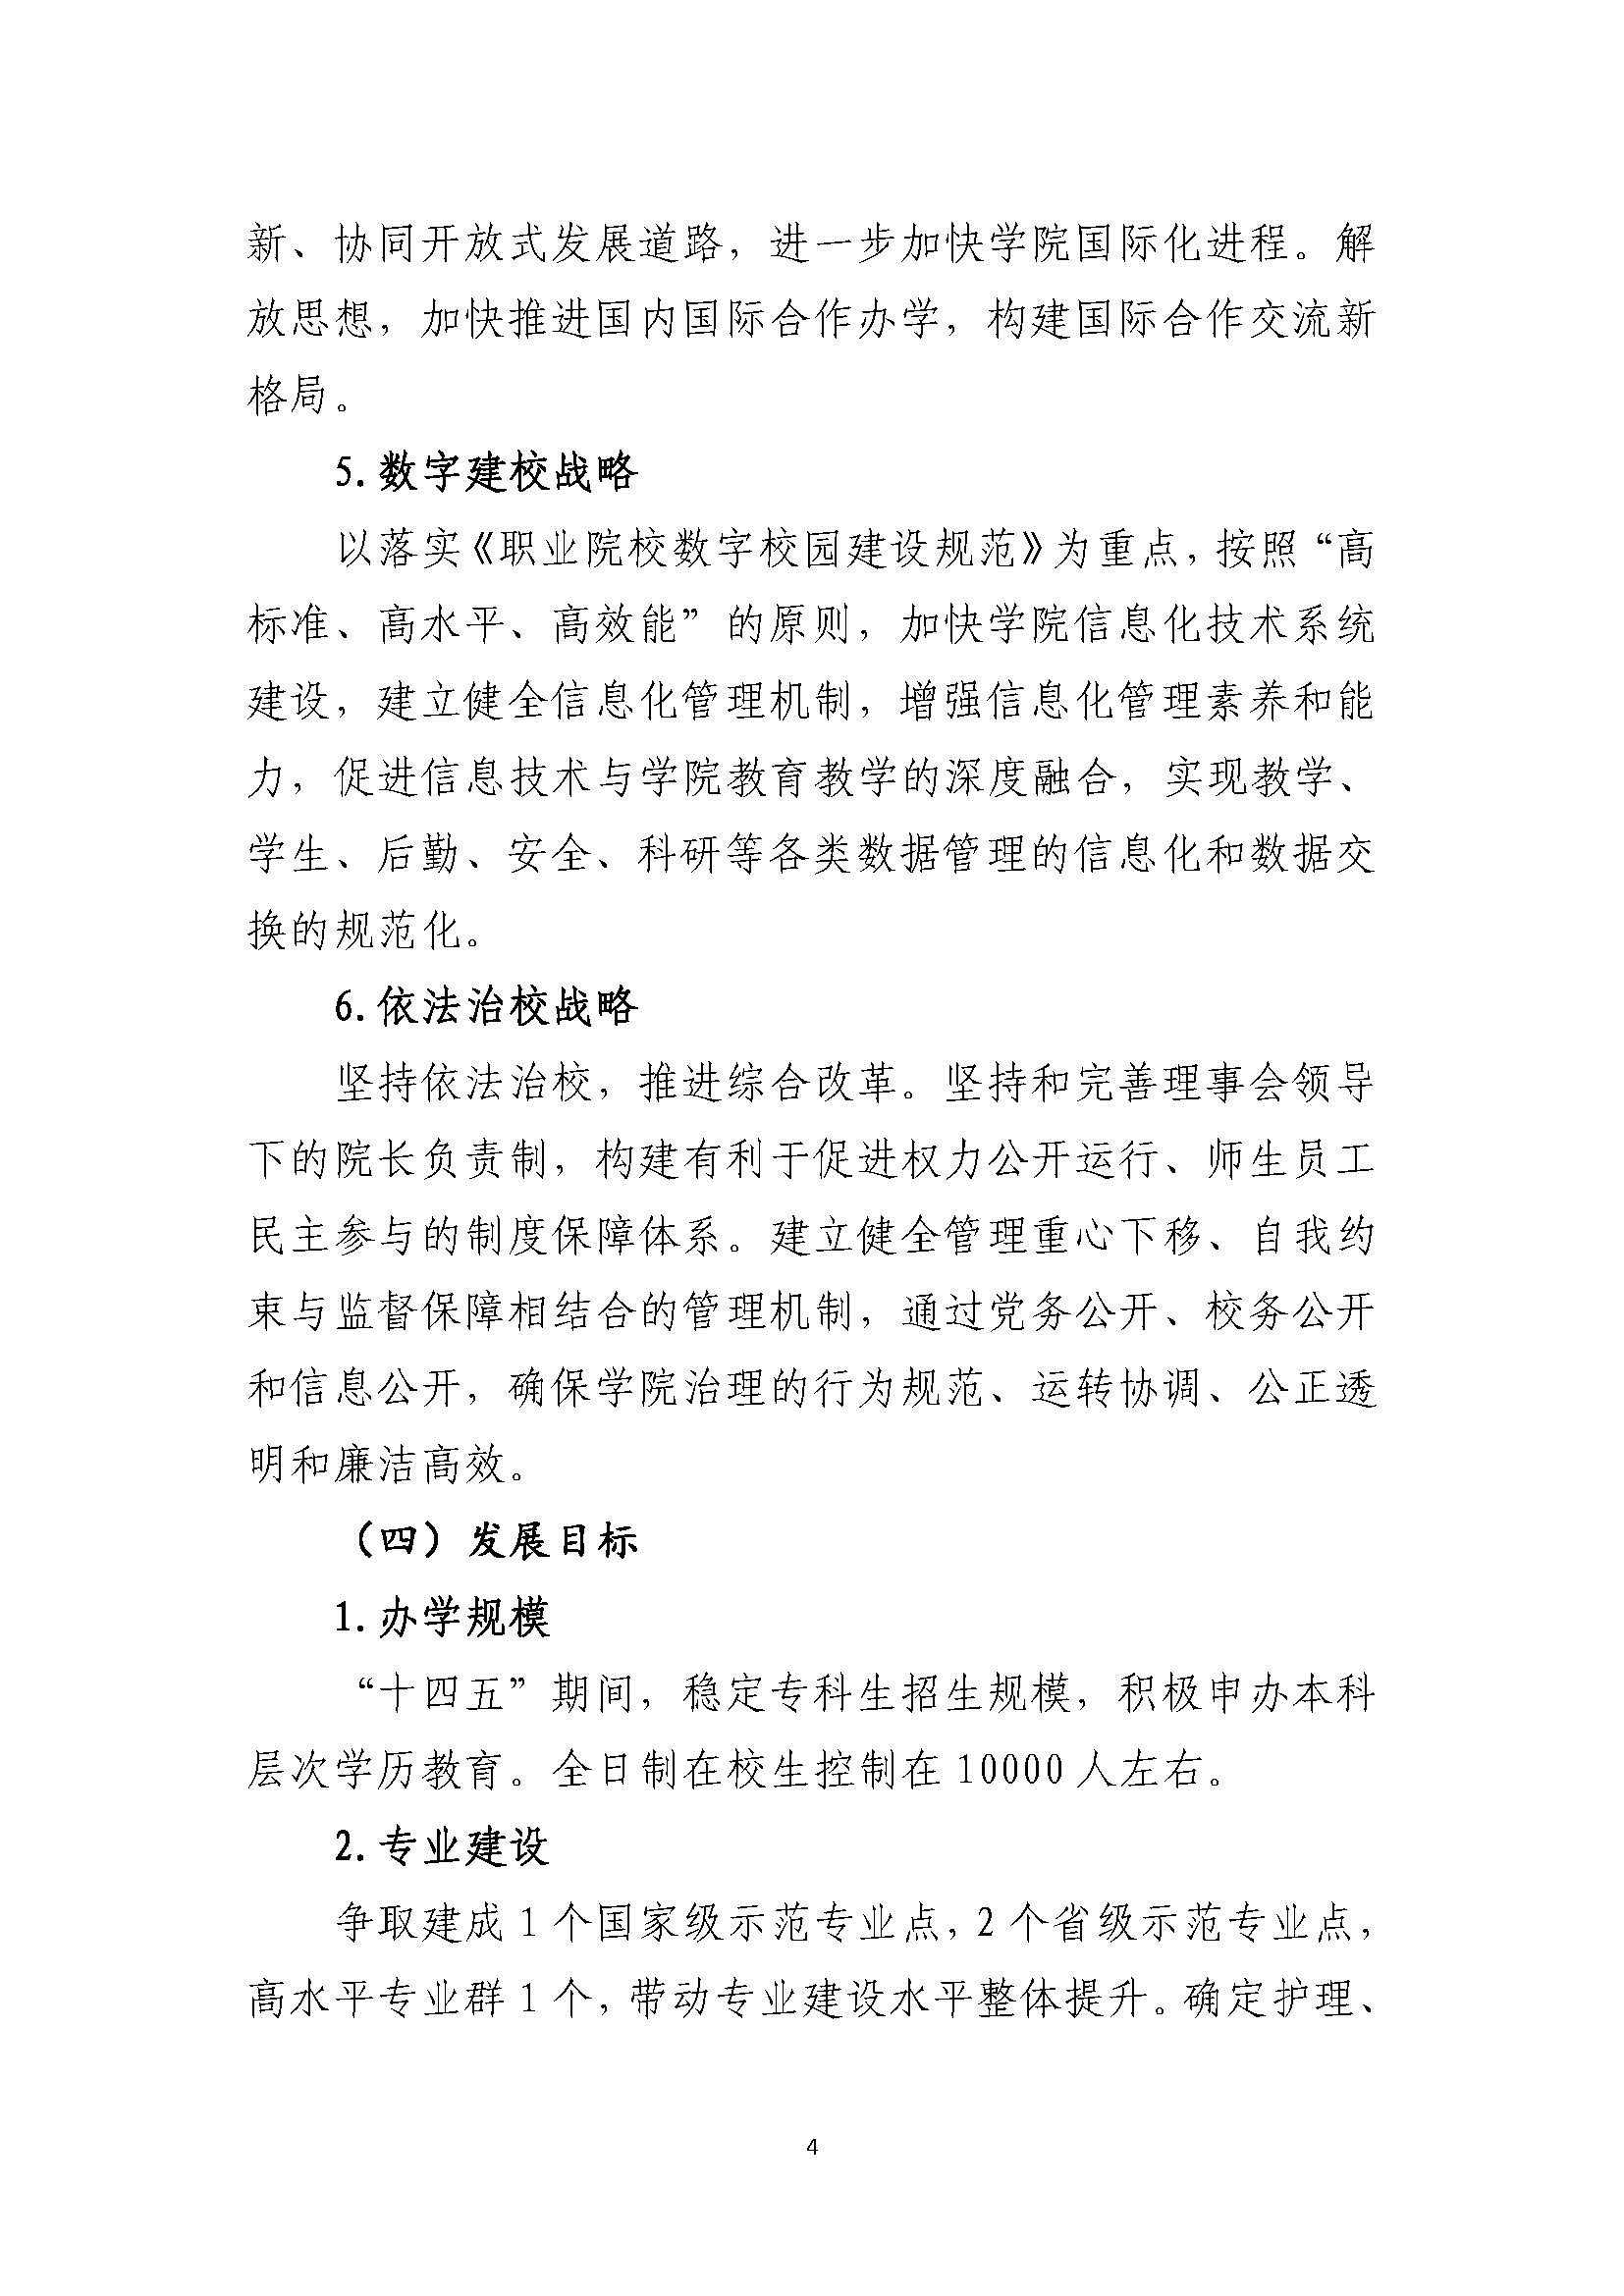 郑州黄河护理职业学院2021-2025年发展规划_页面_04.jpg